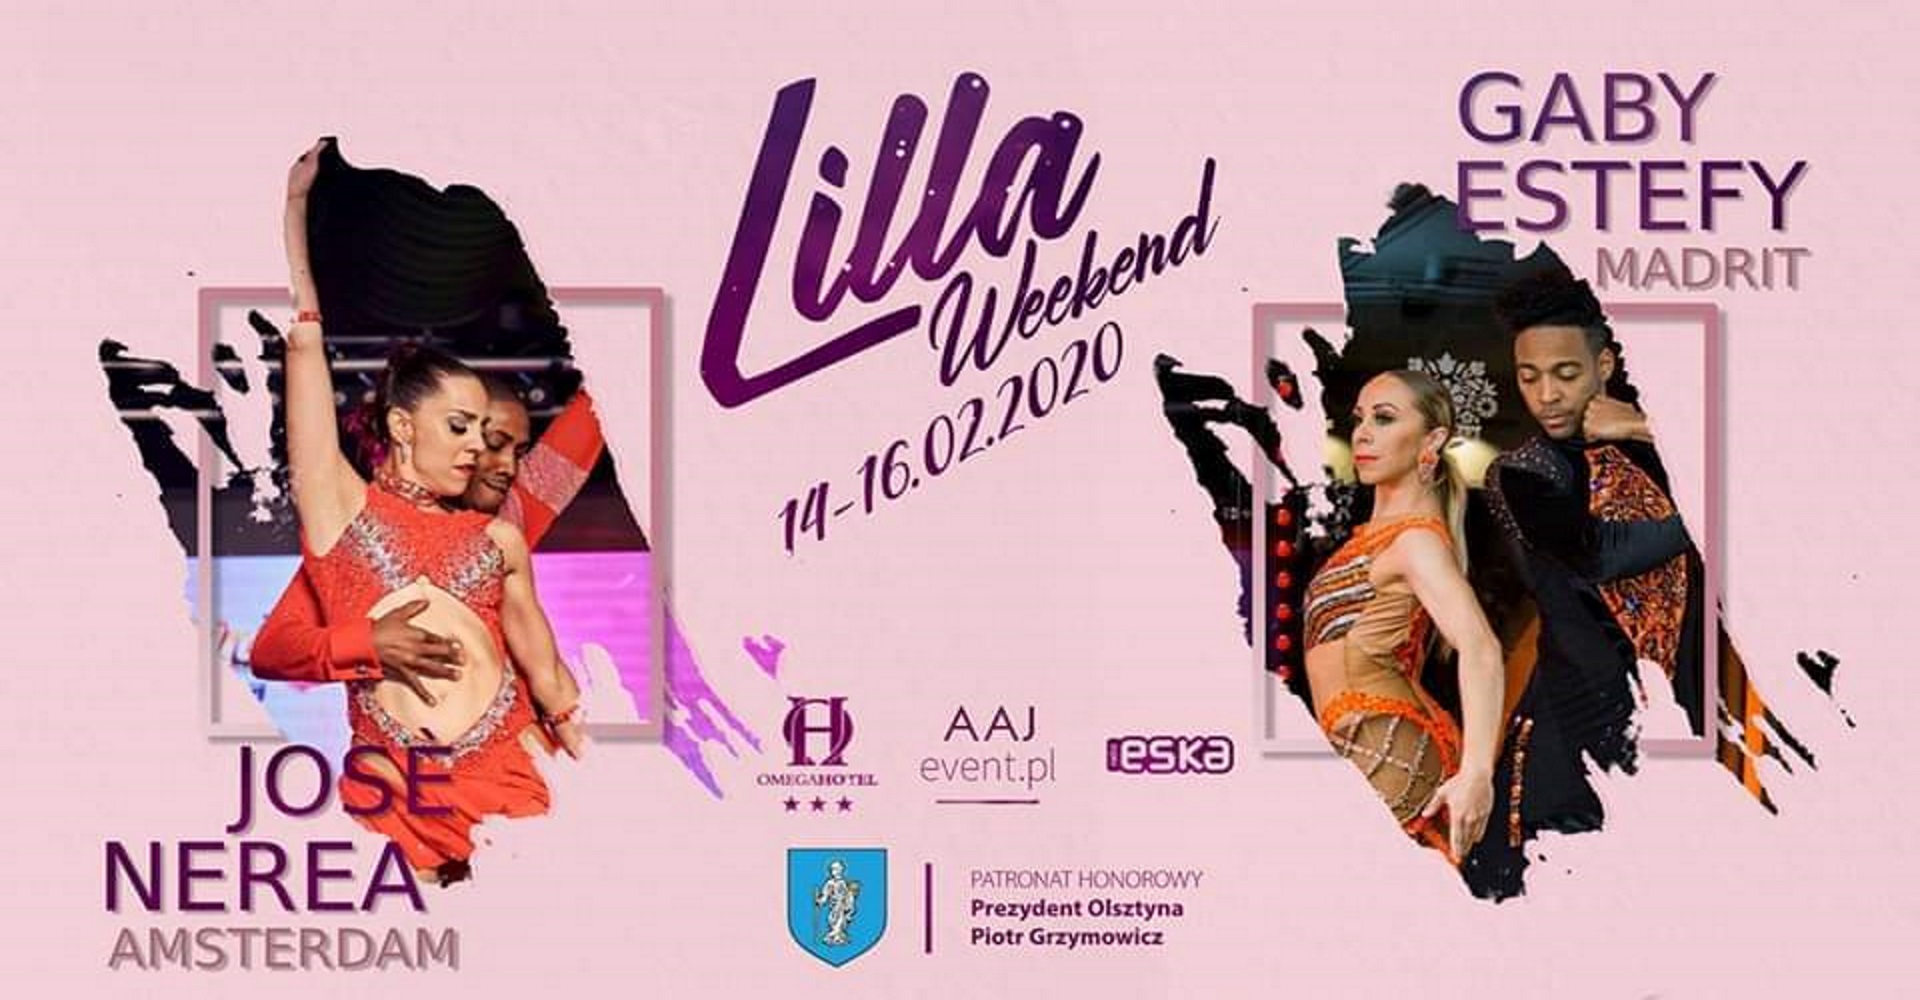 Zdjęcie - plakat zapraszający na Lilla Weekend spotkania tanecznego w Olsztynie. Na plakacie dwa zdjęcia tańczących par oraz loga sponsorów wydarzenia.   